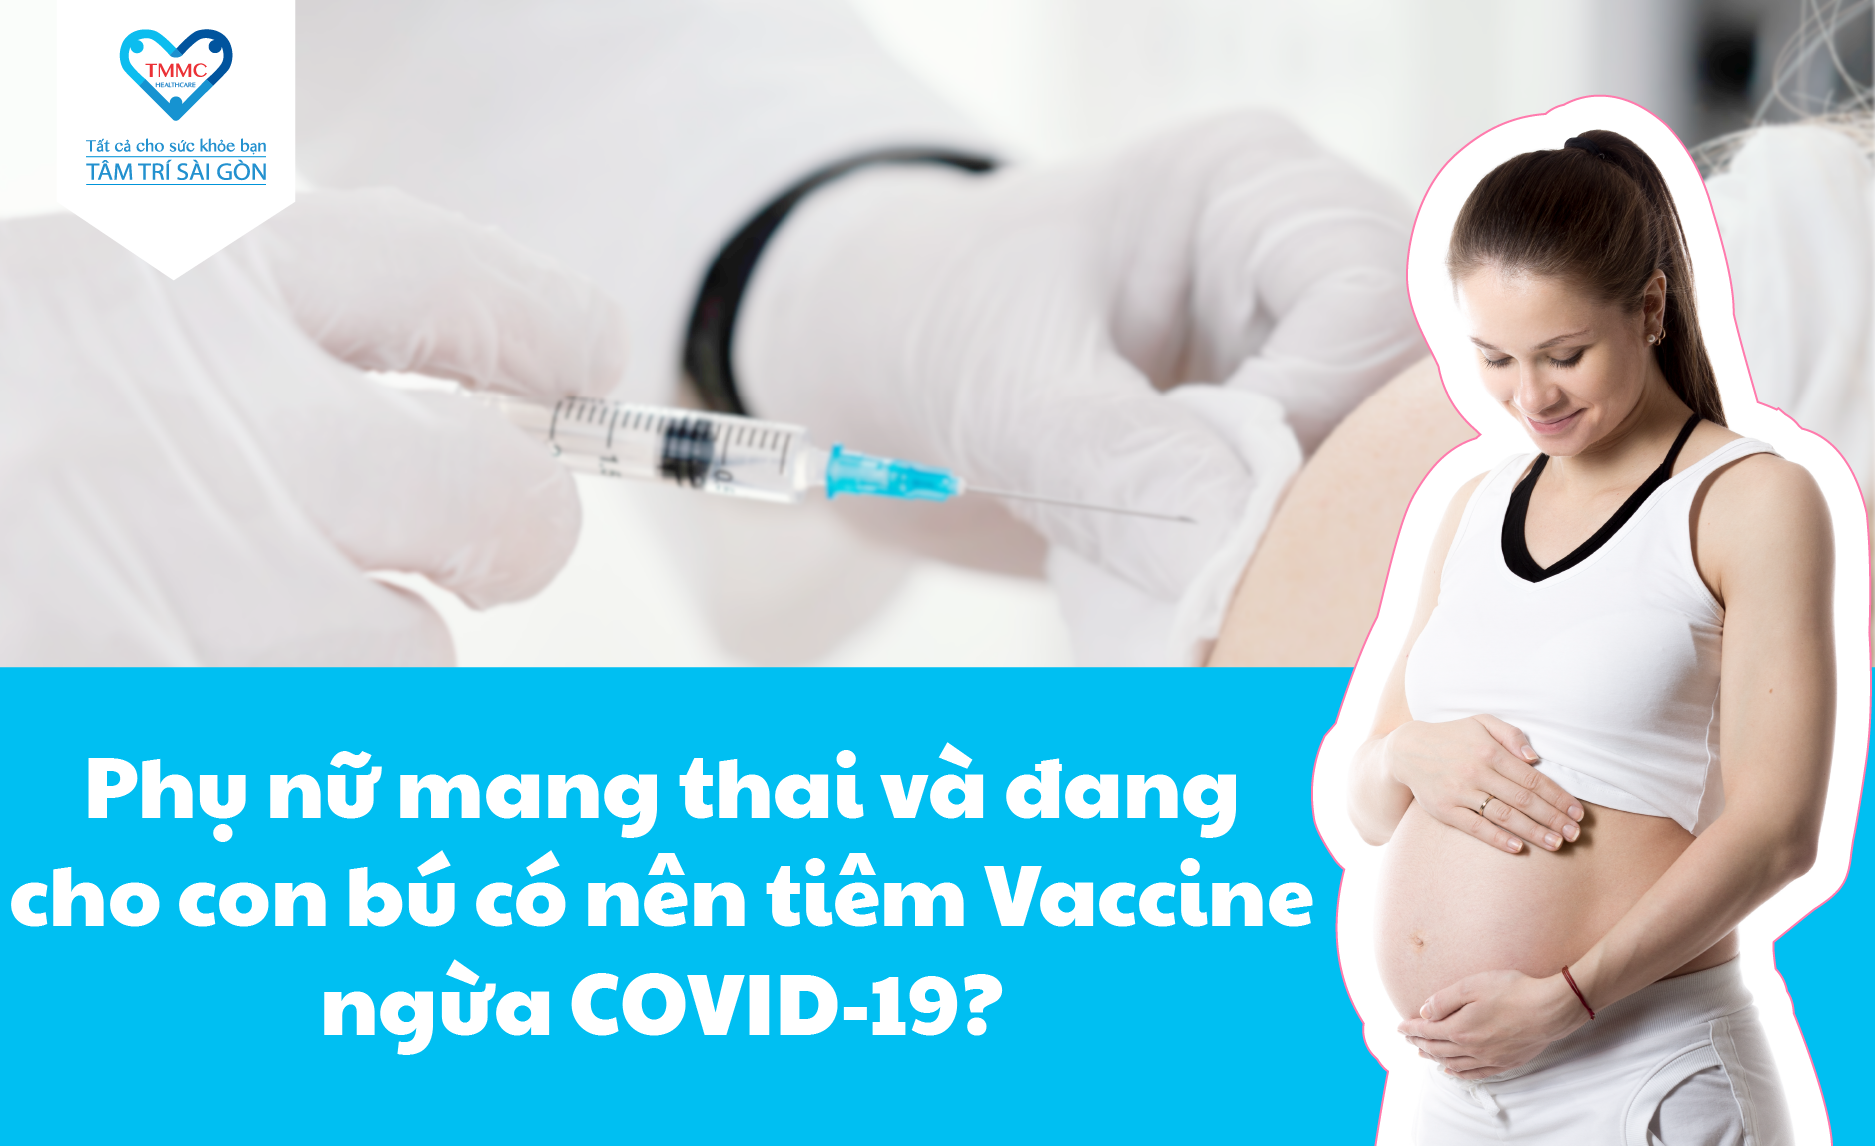 Tổng hợp 10+ có nên tiêm vacxin khi mang thai quan tâm nhiều